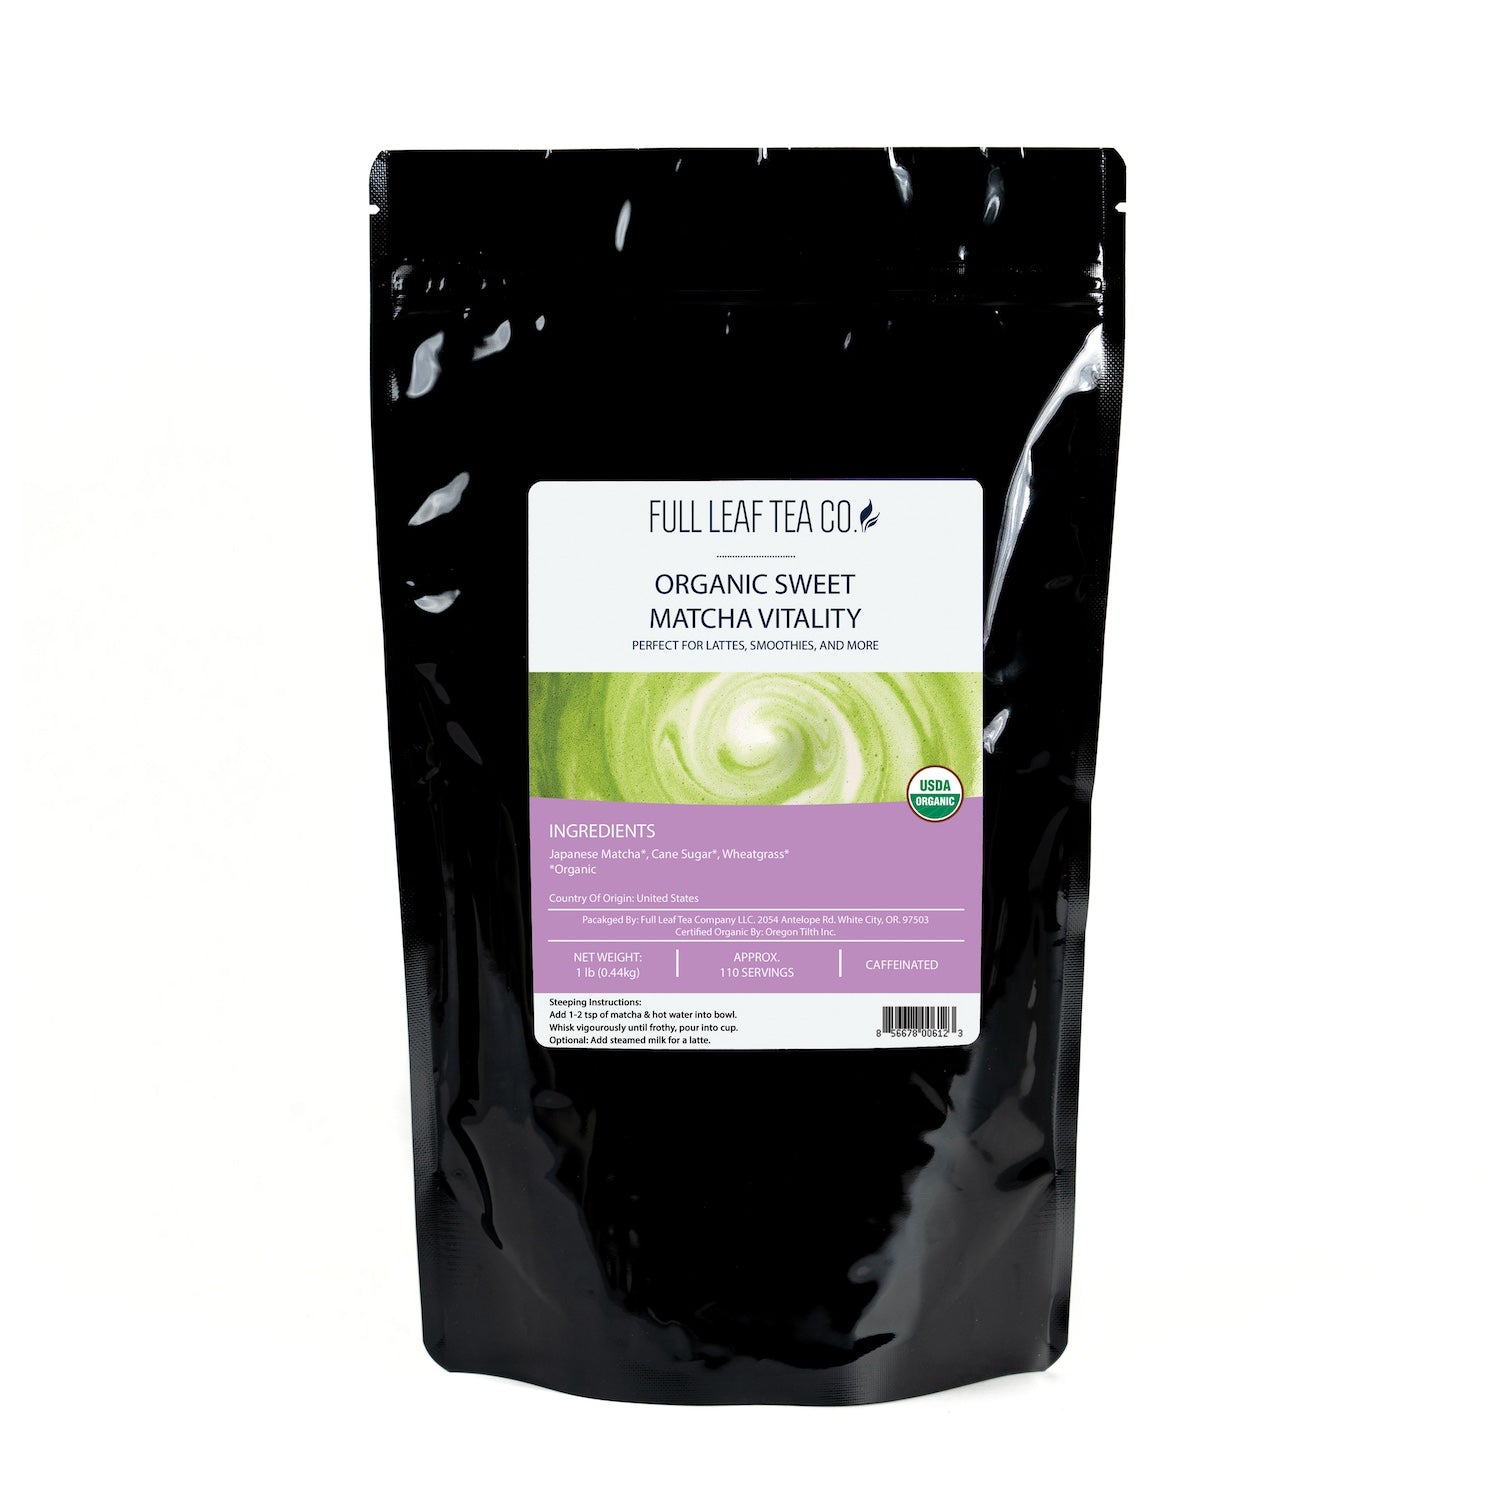 Organic Sweet Matcha Vitality - Matcha - Full Leaf Tea Company